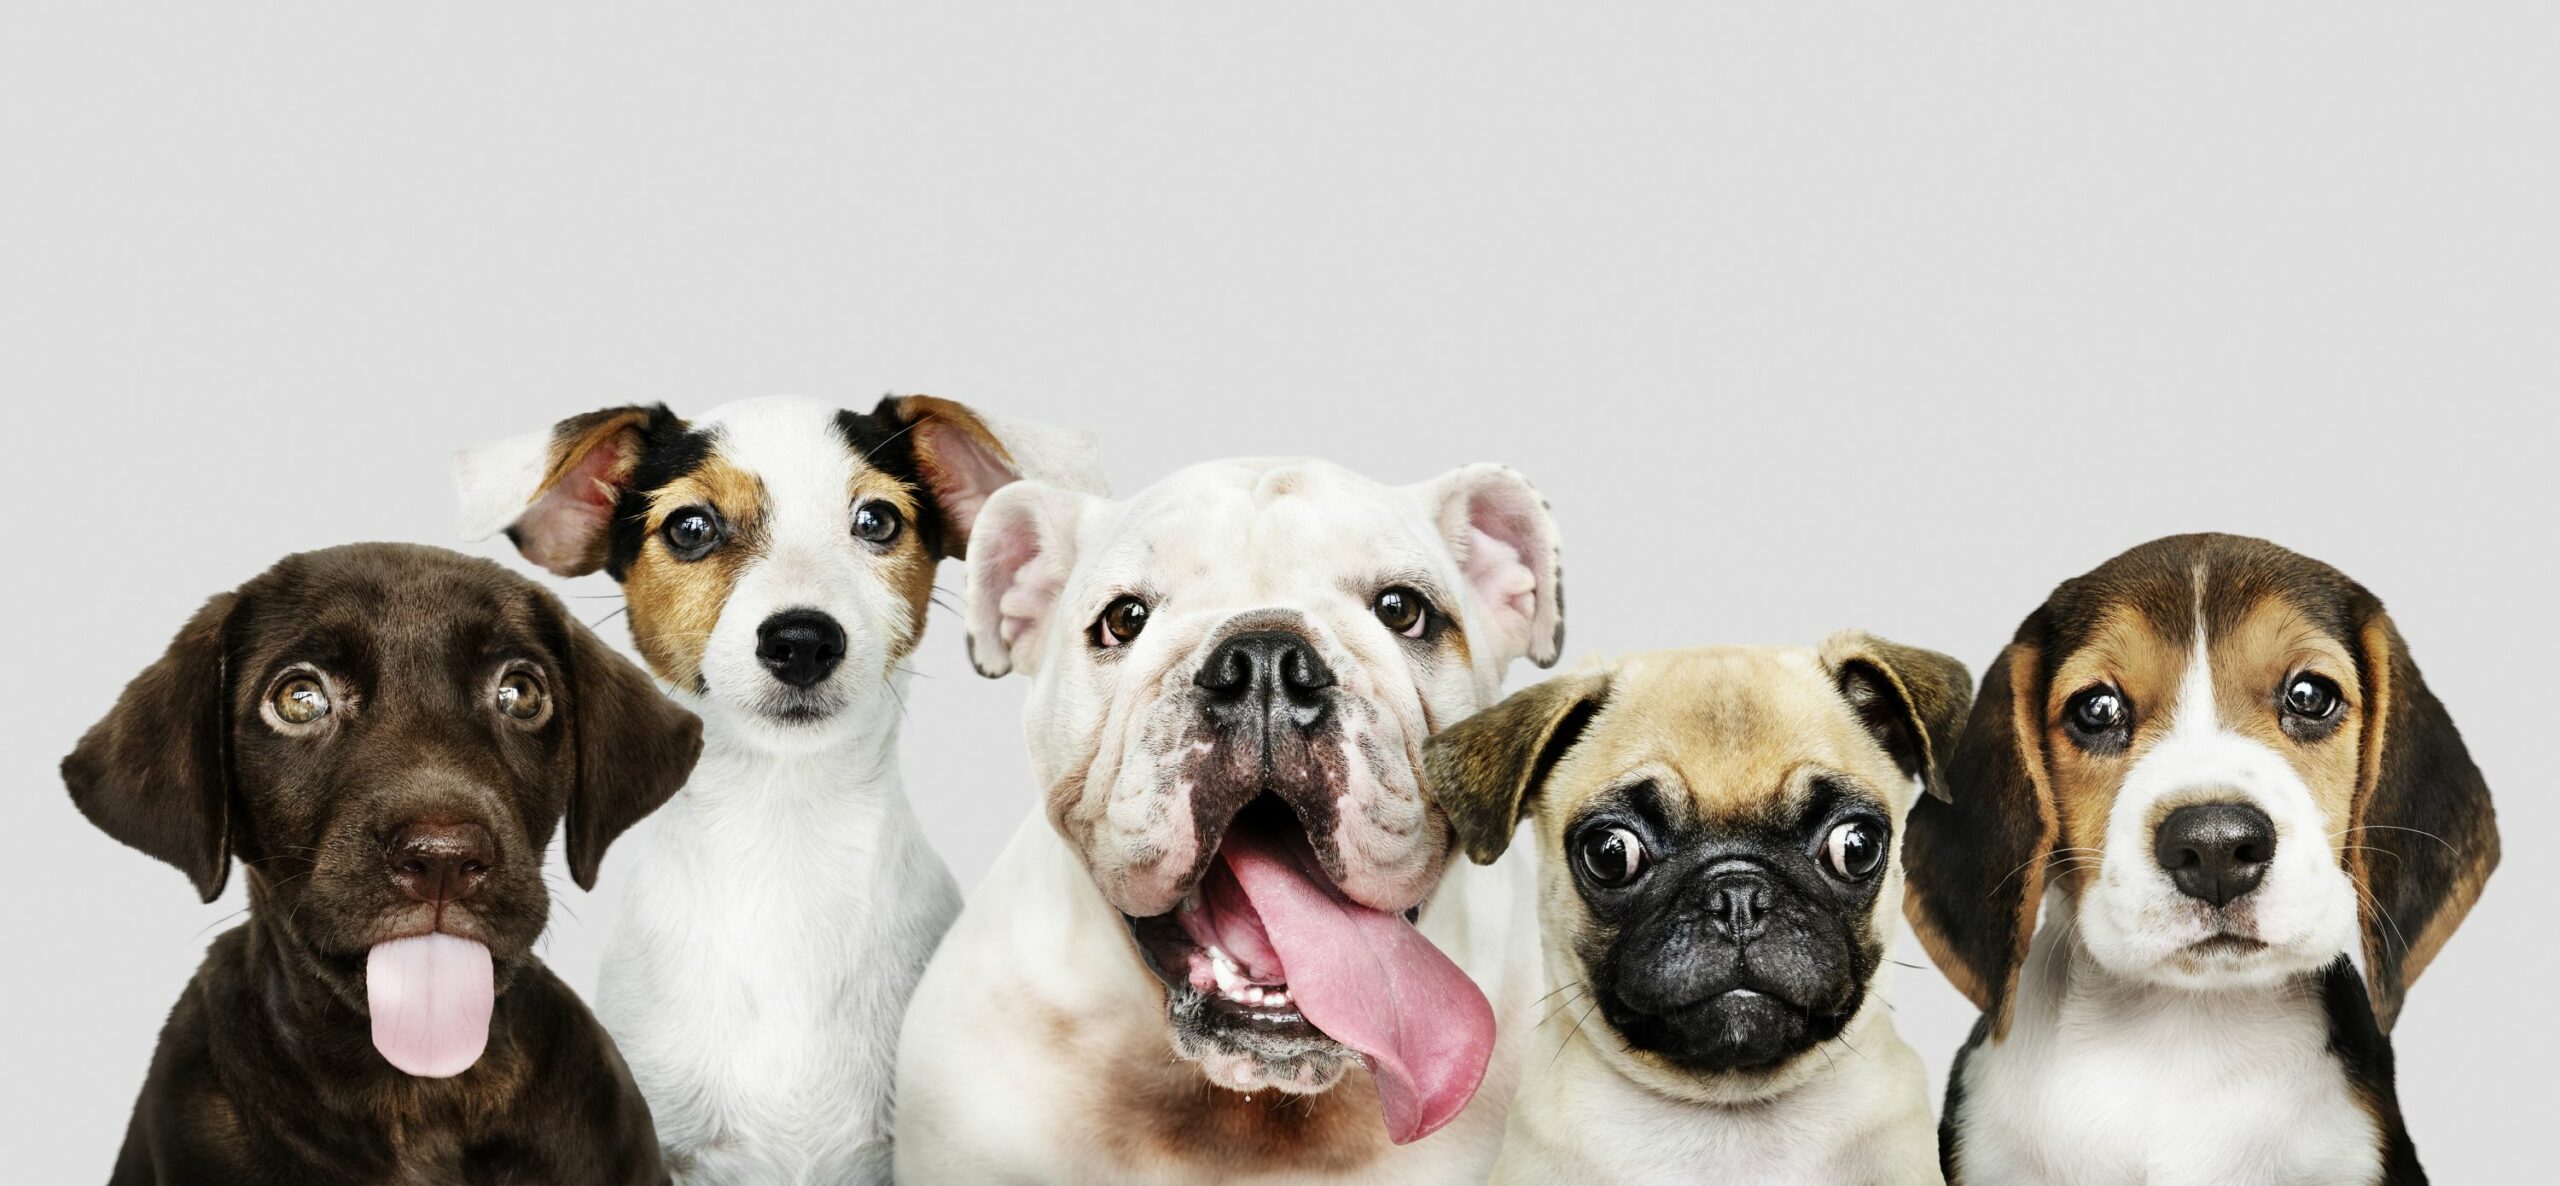 Estudio revela que los perros se vuelven más negativos al percibir el estrés humano (+Detalles)